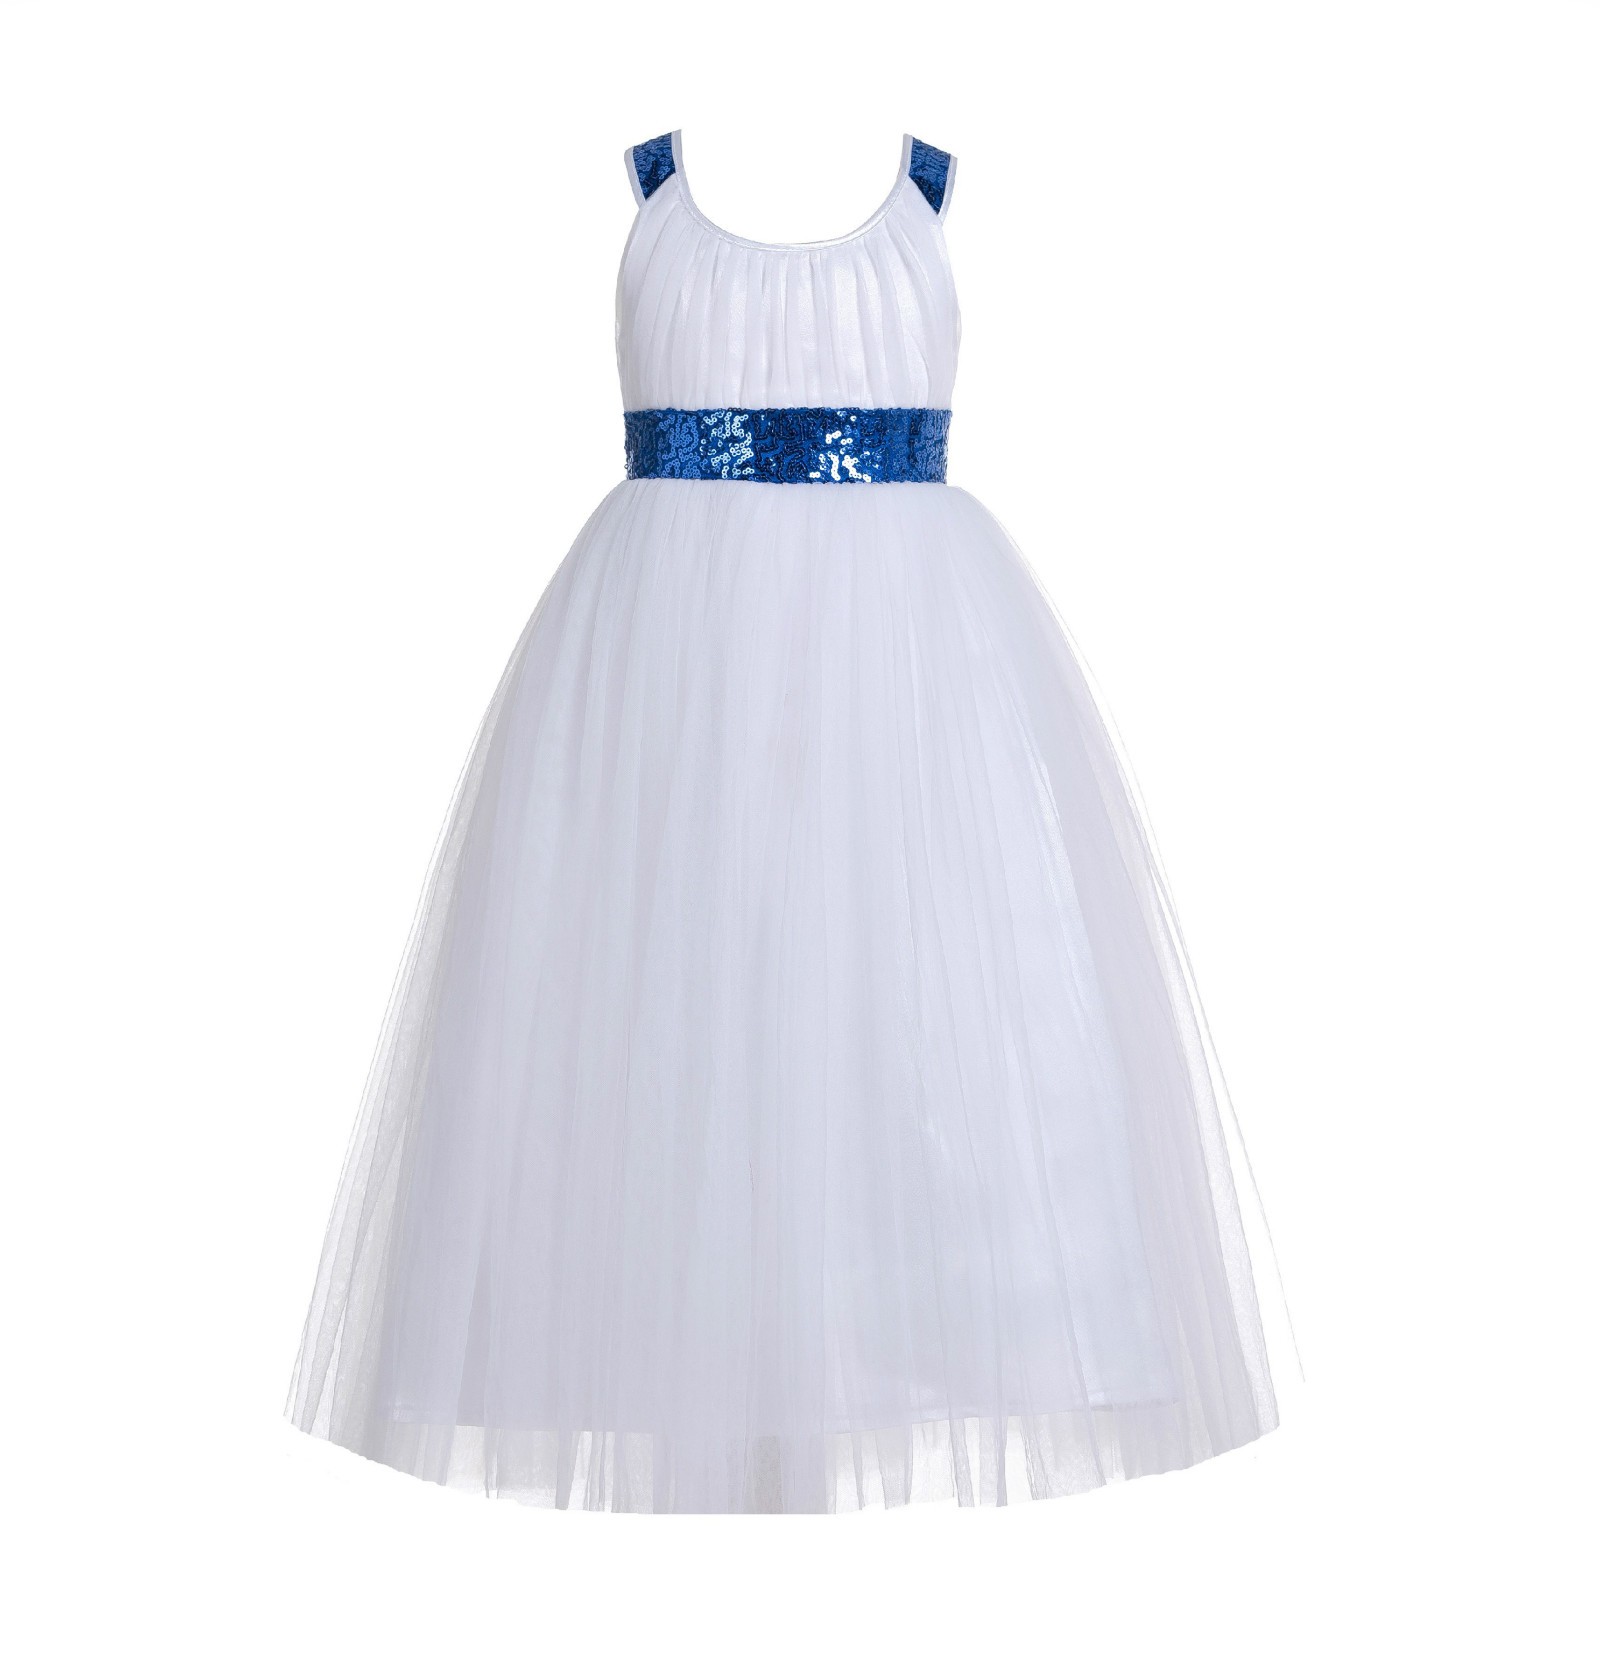 Royal Blue / White Sequin Tulle Dress Crossed Straps A-Line Flower Girl Dress 173